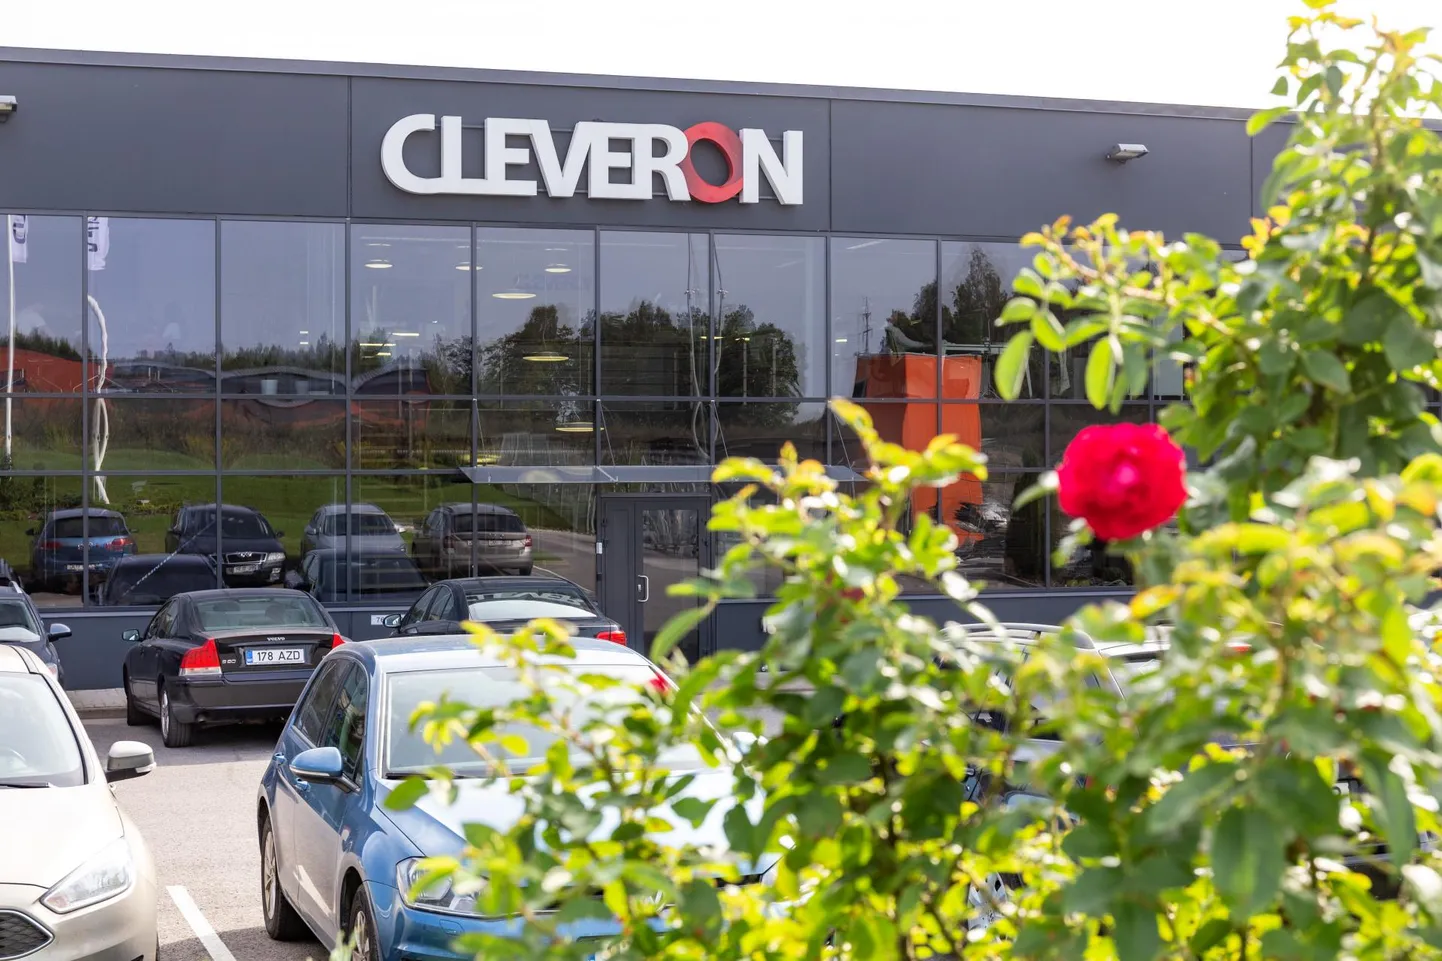 Cleveroni hiilgeaeg jääb 2018. ja 2019. aastasse, mil ettevõte teenis kahe aastaga ligi 20 miljonit eurot kasumit ning ehitas valmis suure tootmis- ja arenduskeskuse laenuraha vajamata. Koroonaviiruse levikuga kaasnenud piirangud viisid aga ettevõtte kahjumisse.